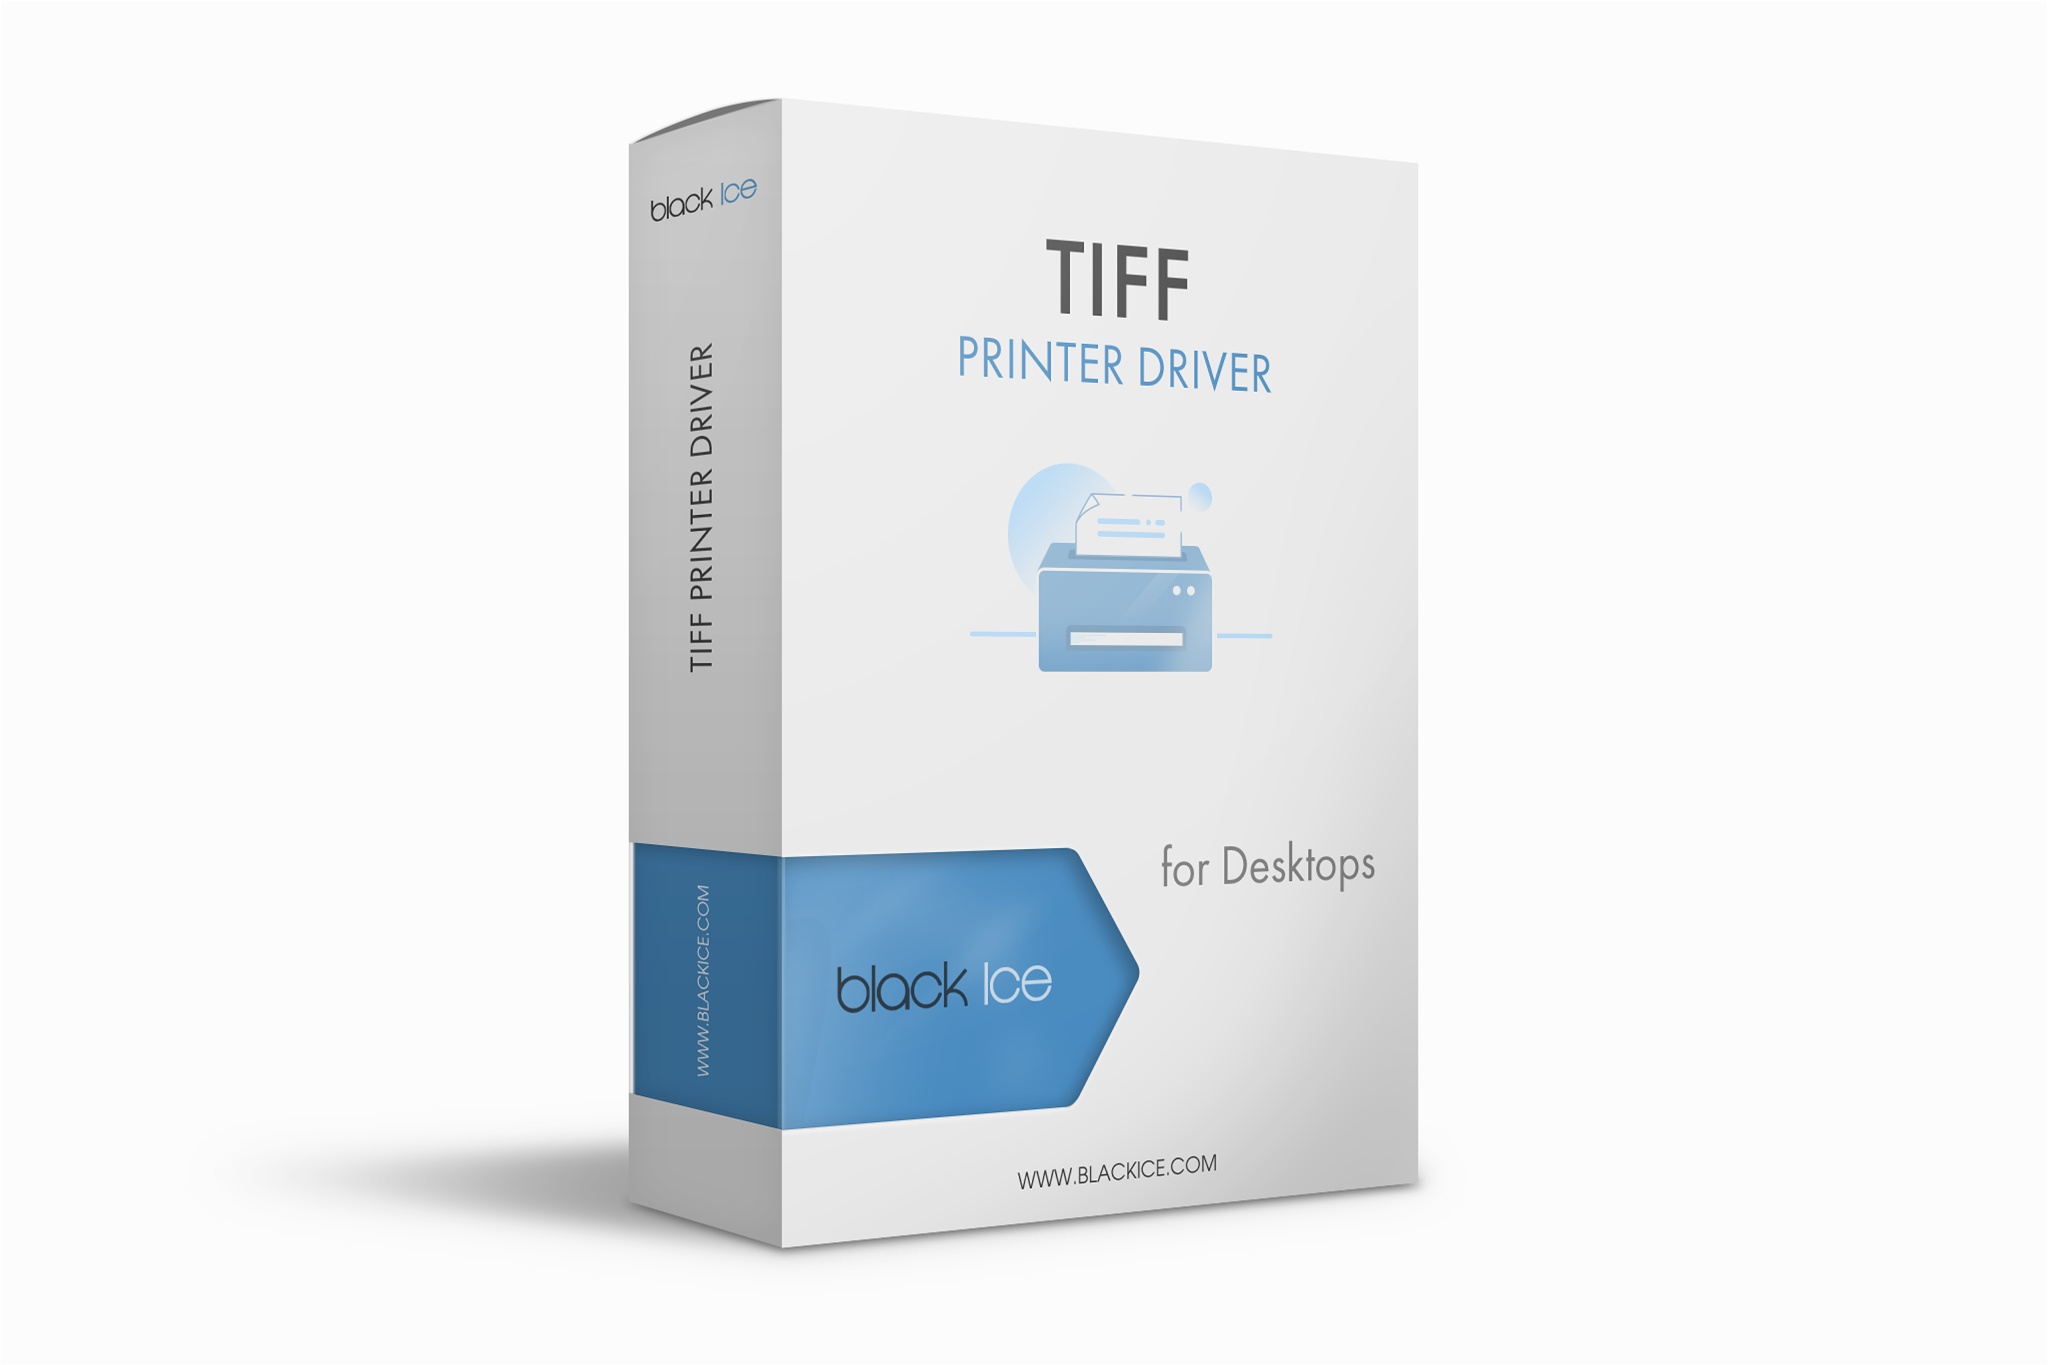 TIFF/Monochrome Printer Driver Subscription (10 Licenses)